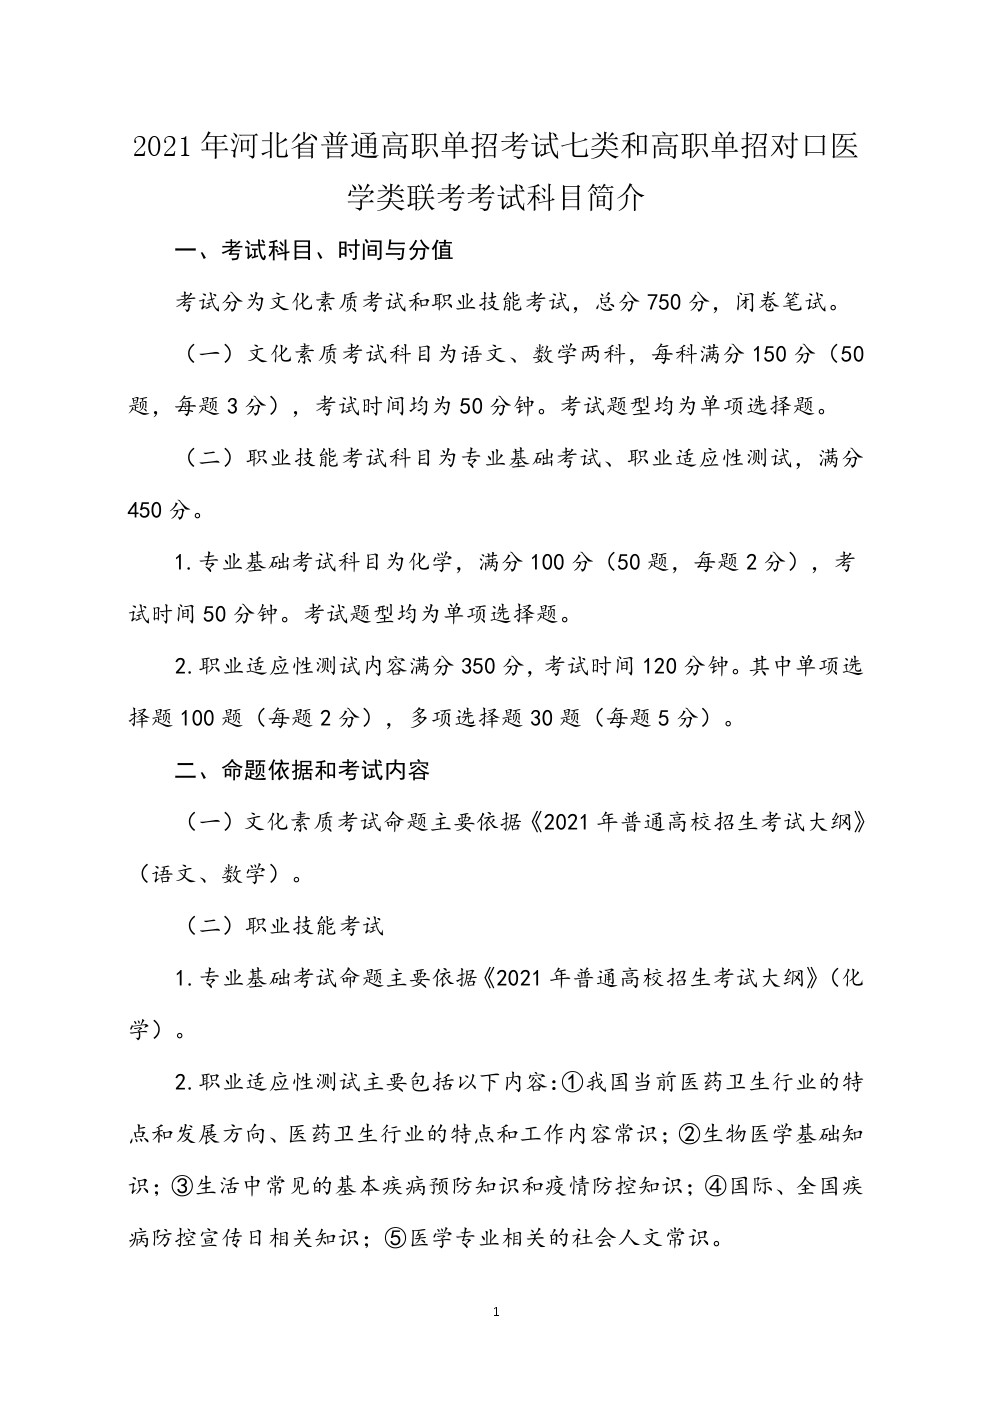 2021年河北省普通高职单招考试七类和对口医学类联考大纲